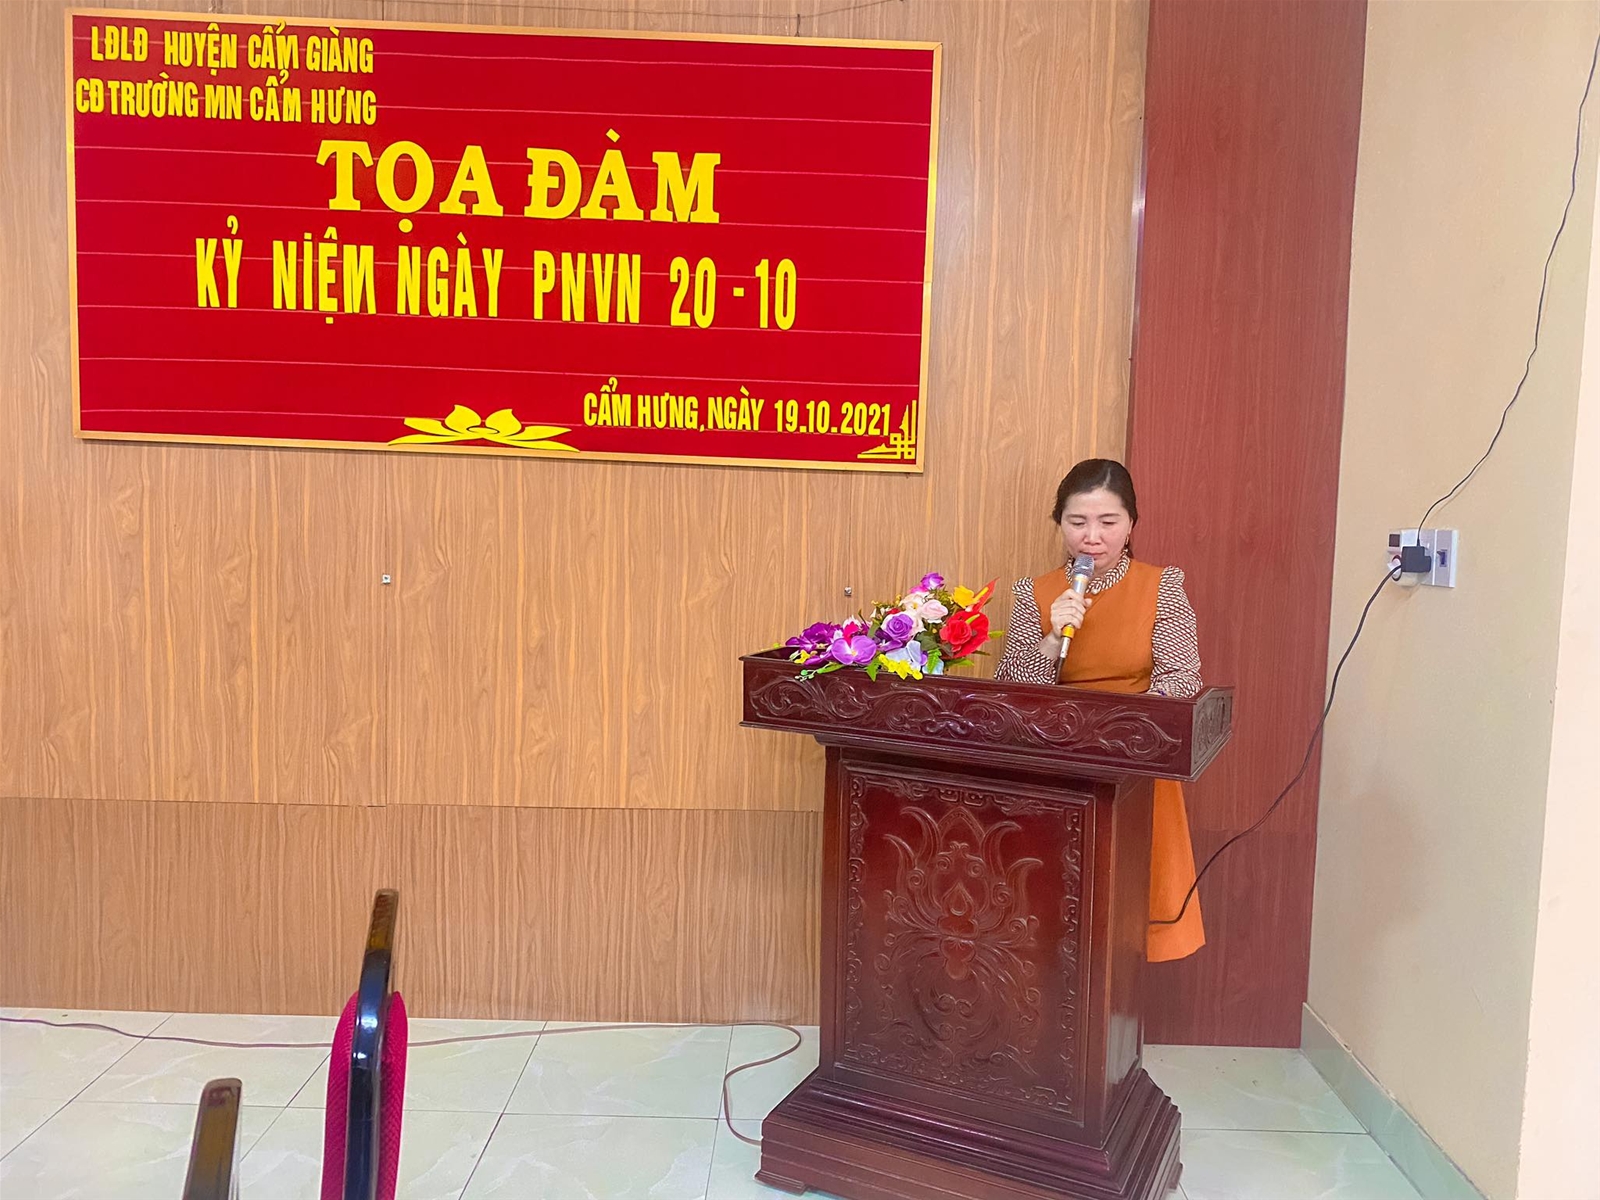 Đồng chí Nguyễn Thị Chiên - Chủ tịch Công đoàn phát biểu tại buổi lễ